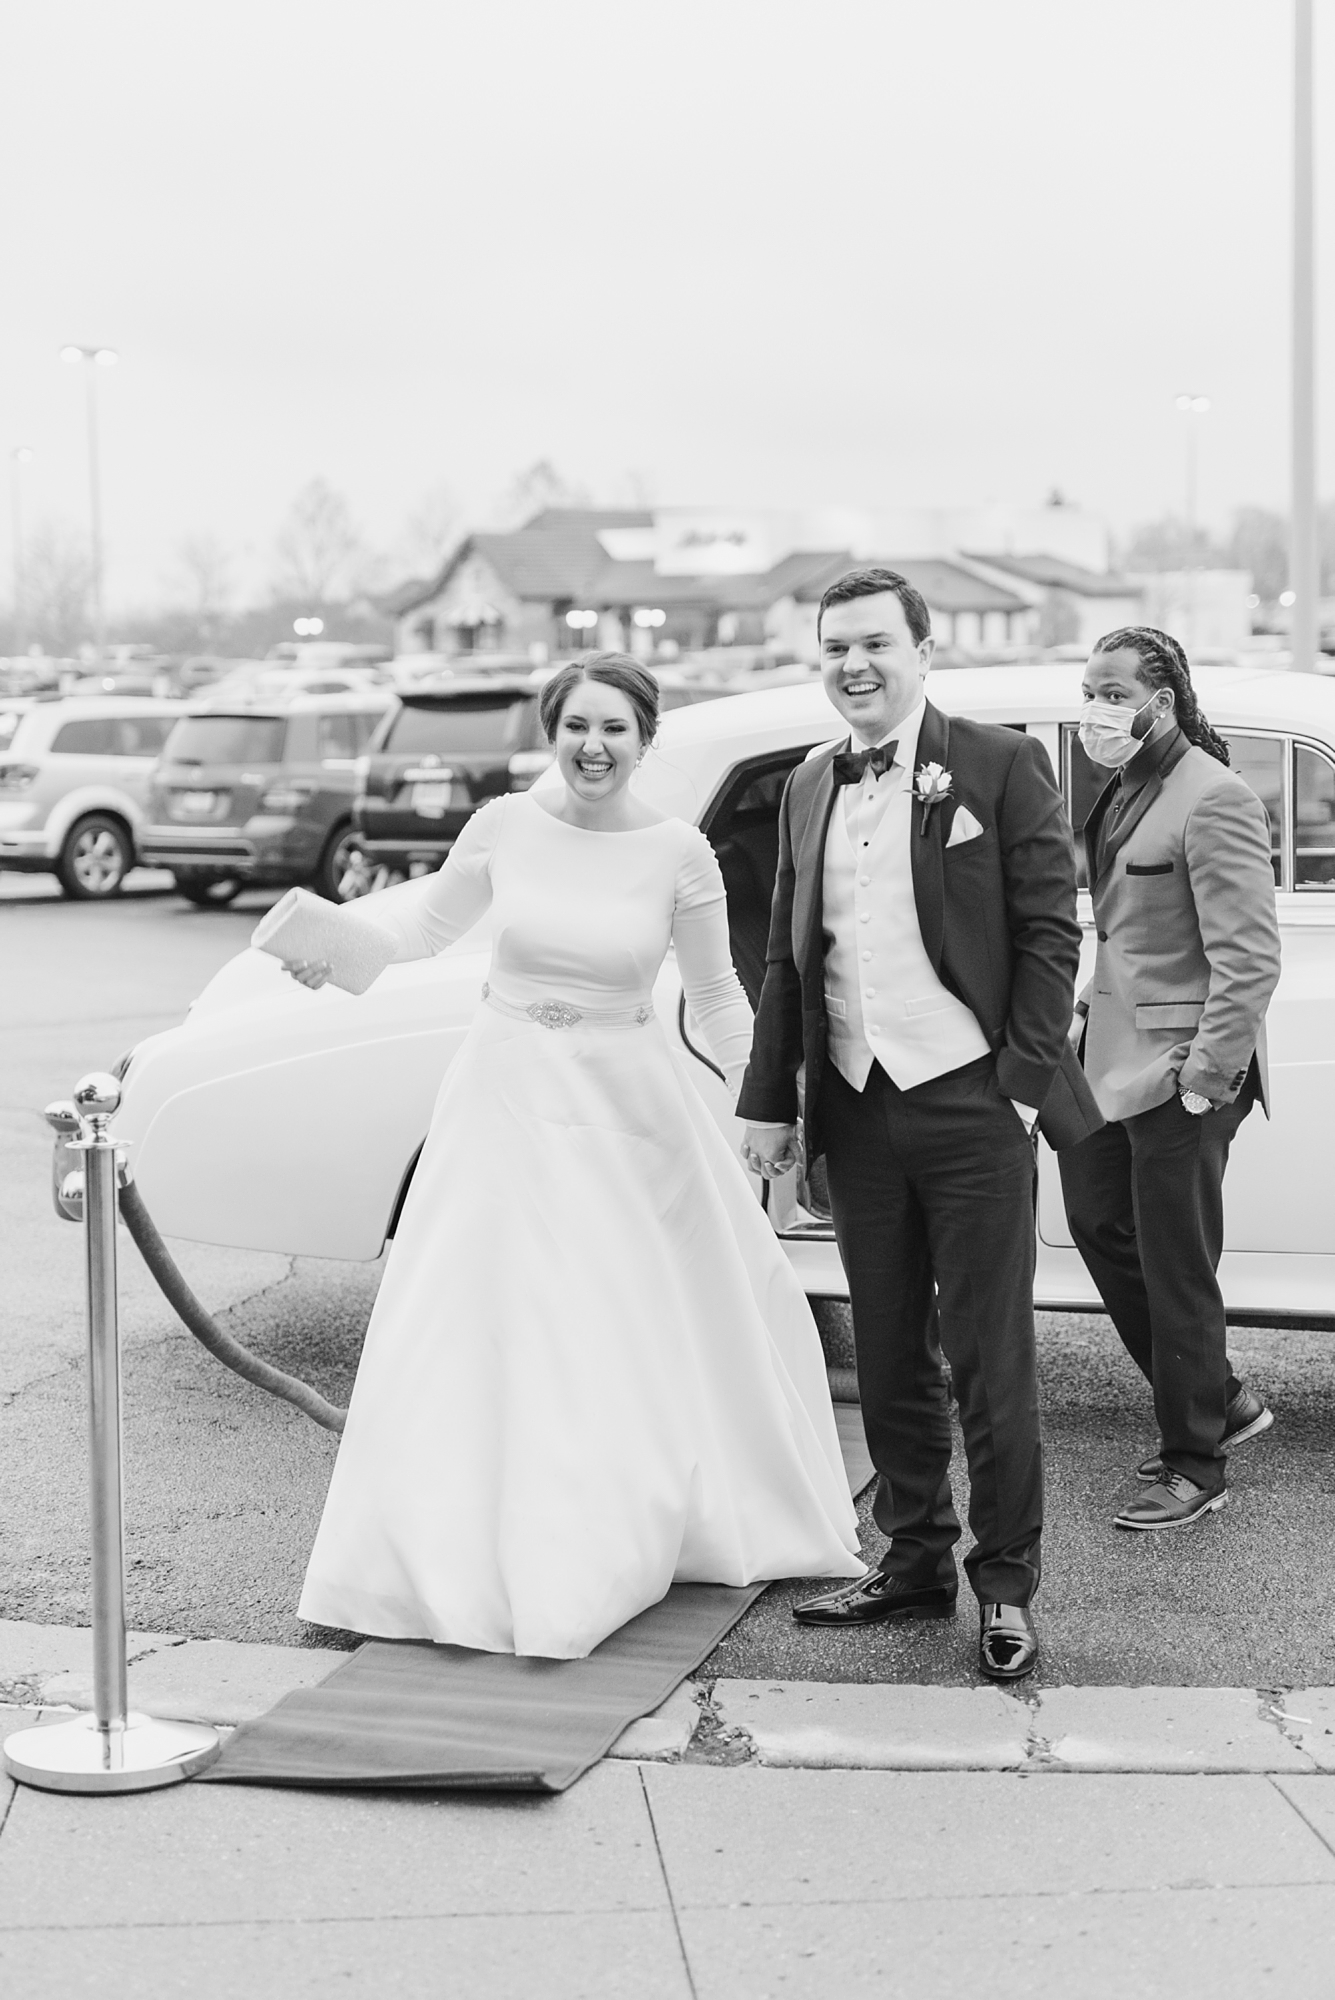 bride and groom enter wedding reception